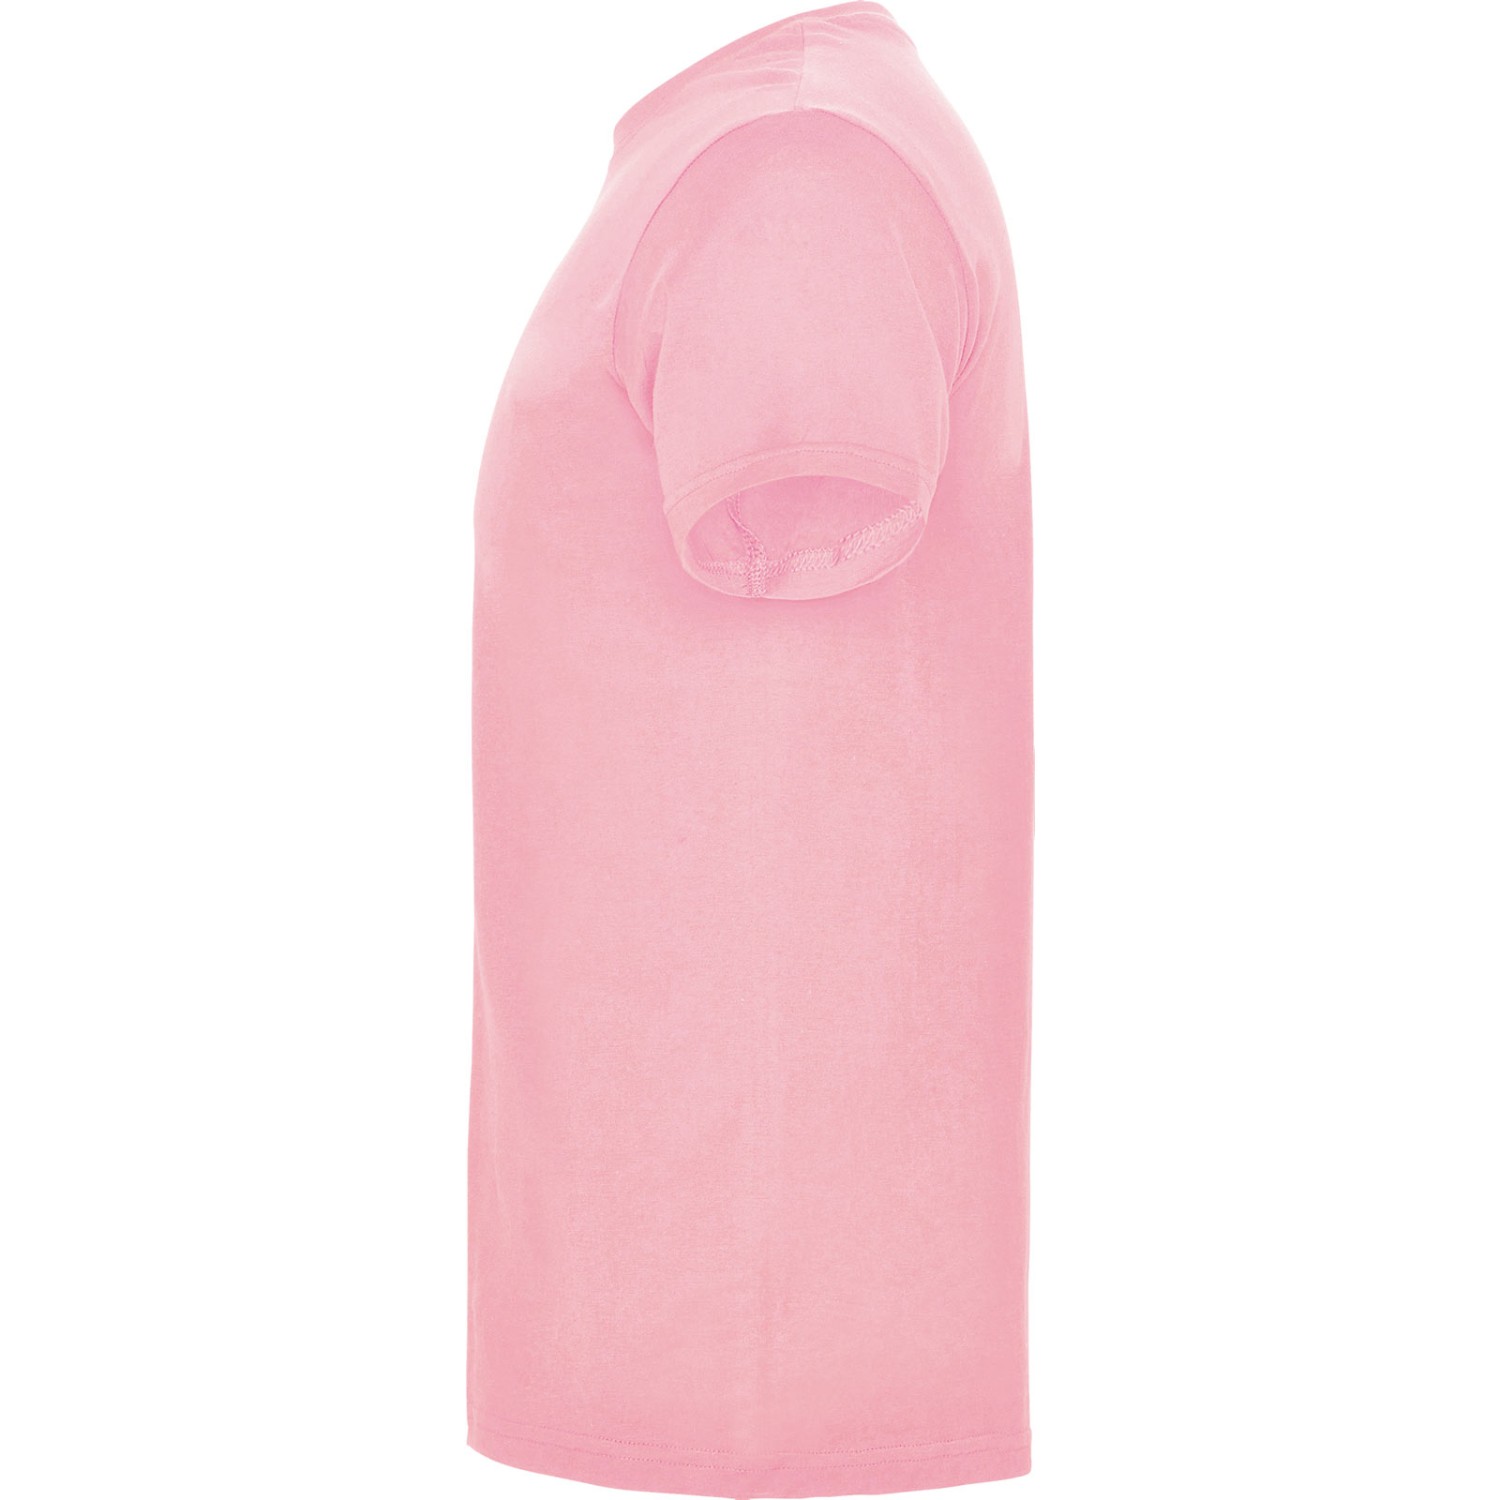 3. Foto T-Shirt BEAGLE Kurzarm Rundhals mit Druck (Farbe: light pink Größe: S)